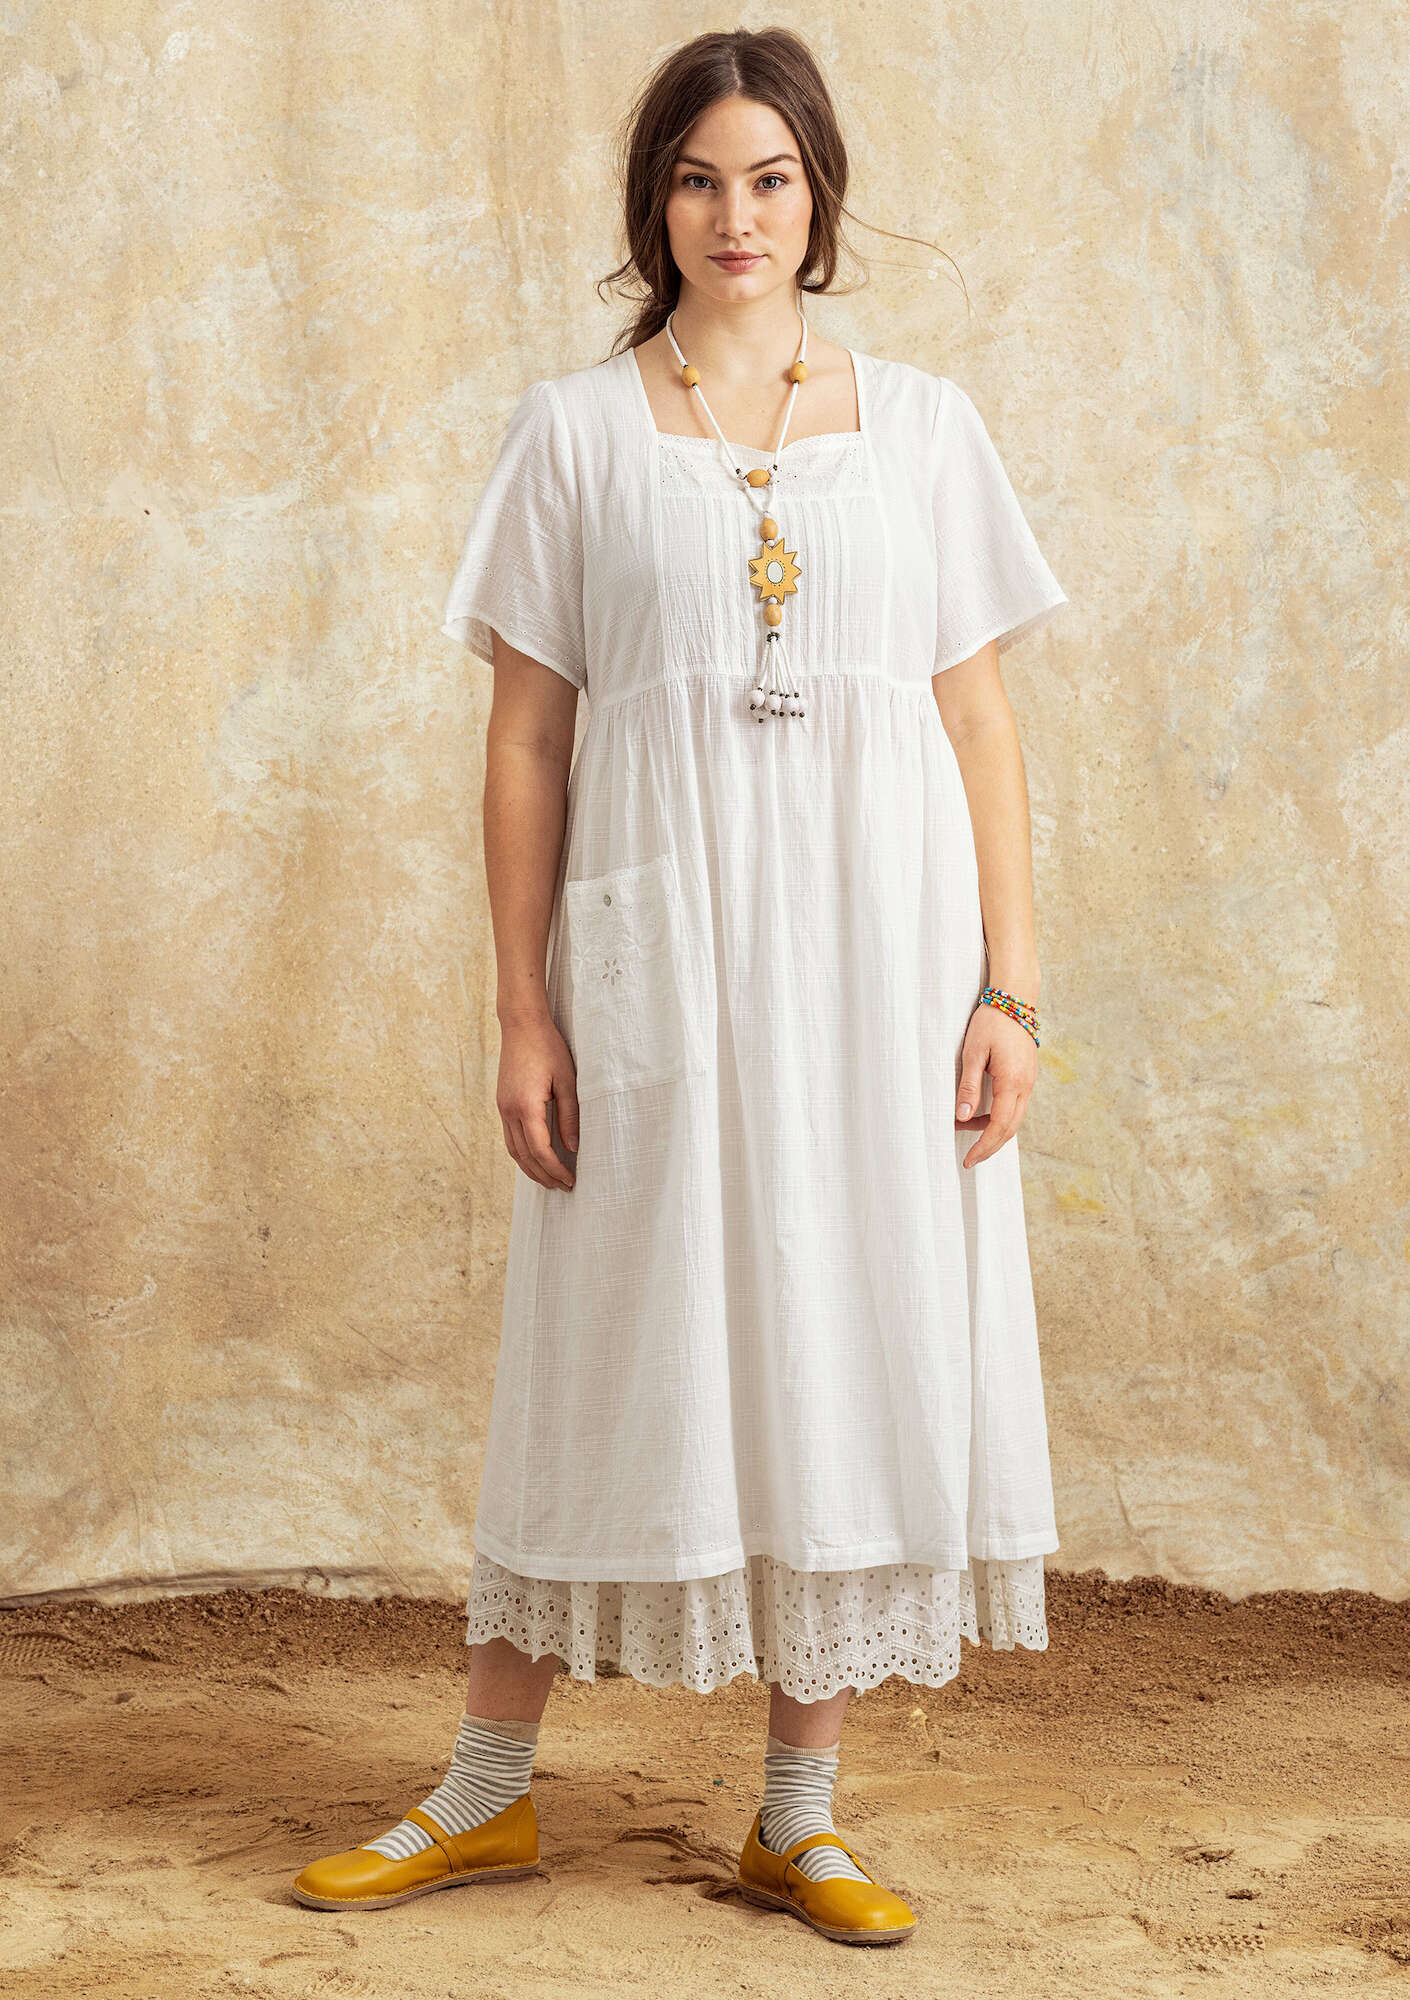 Vevd kjole «Tania» i økologisk bomull halvbleket